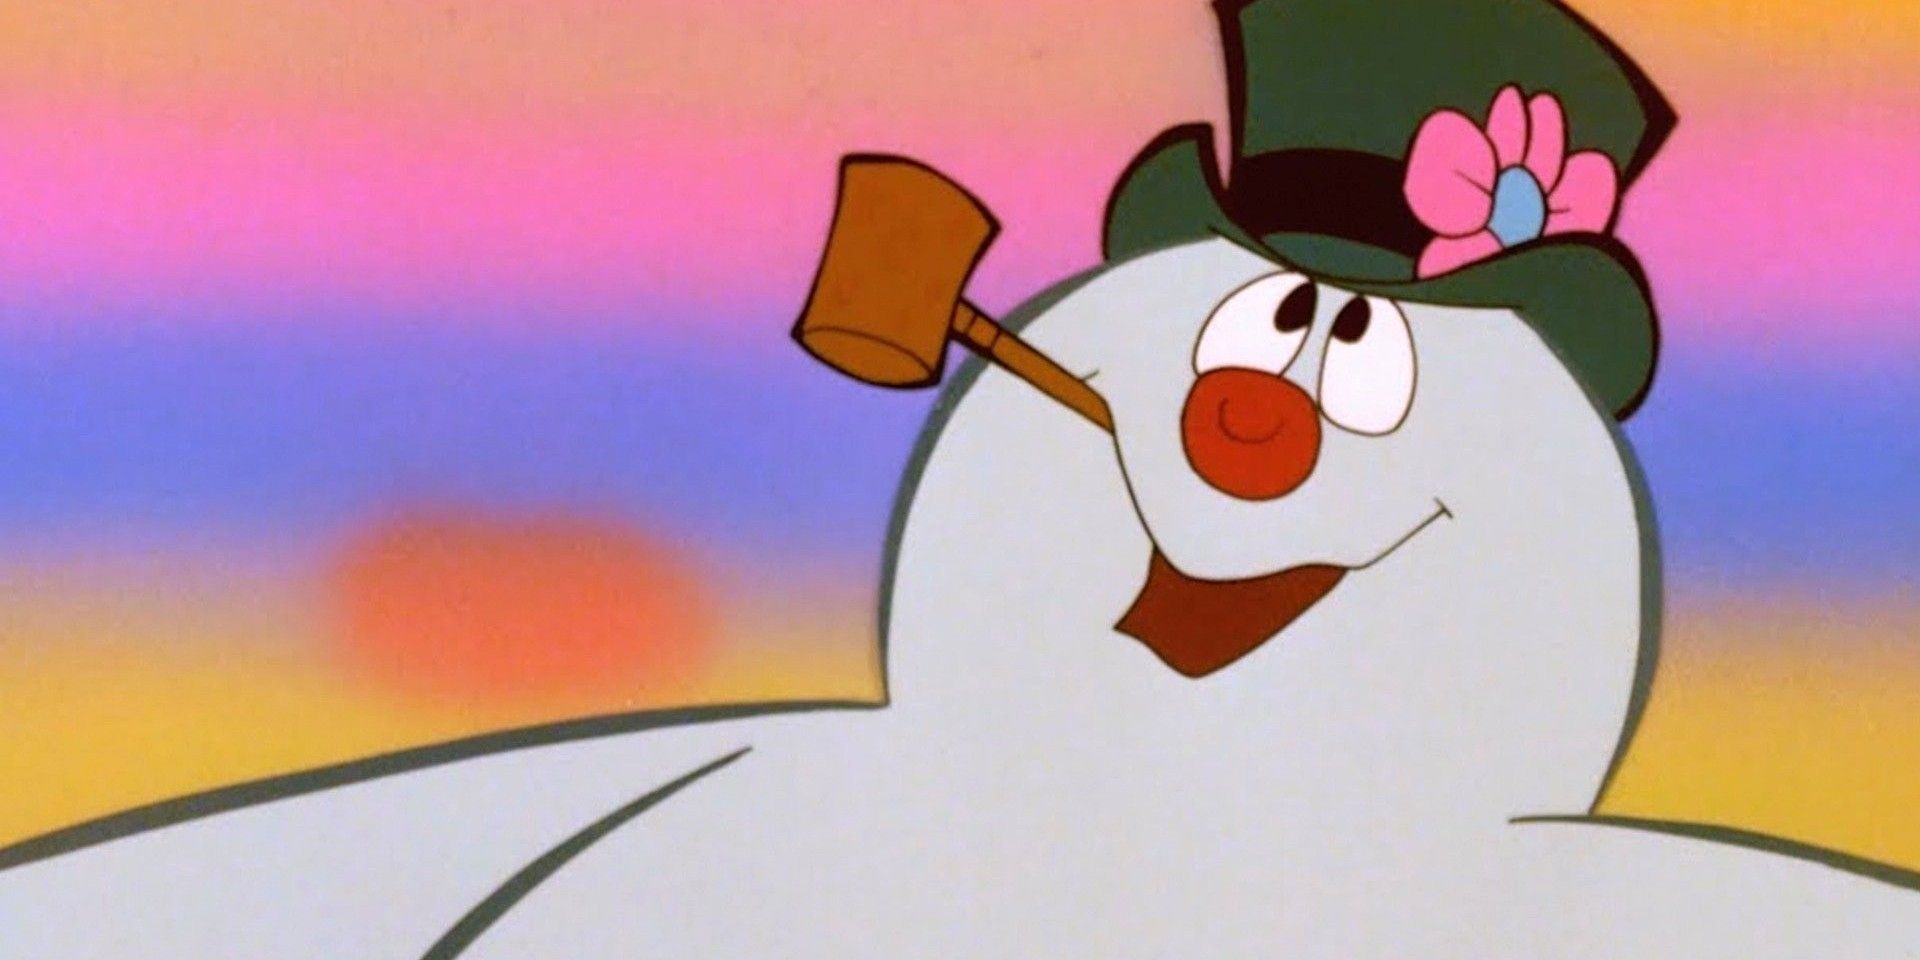 "Están matando al pobre niño": los hábitos de fumar de Frosty en el clásico navideño de 1969 han horrorizado al verdadero médico